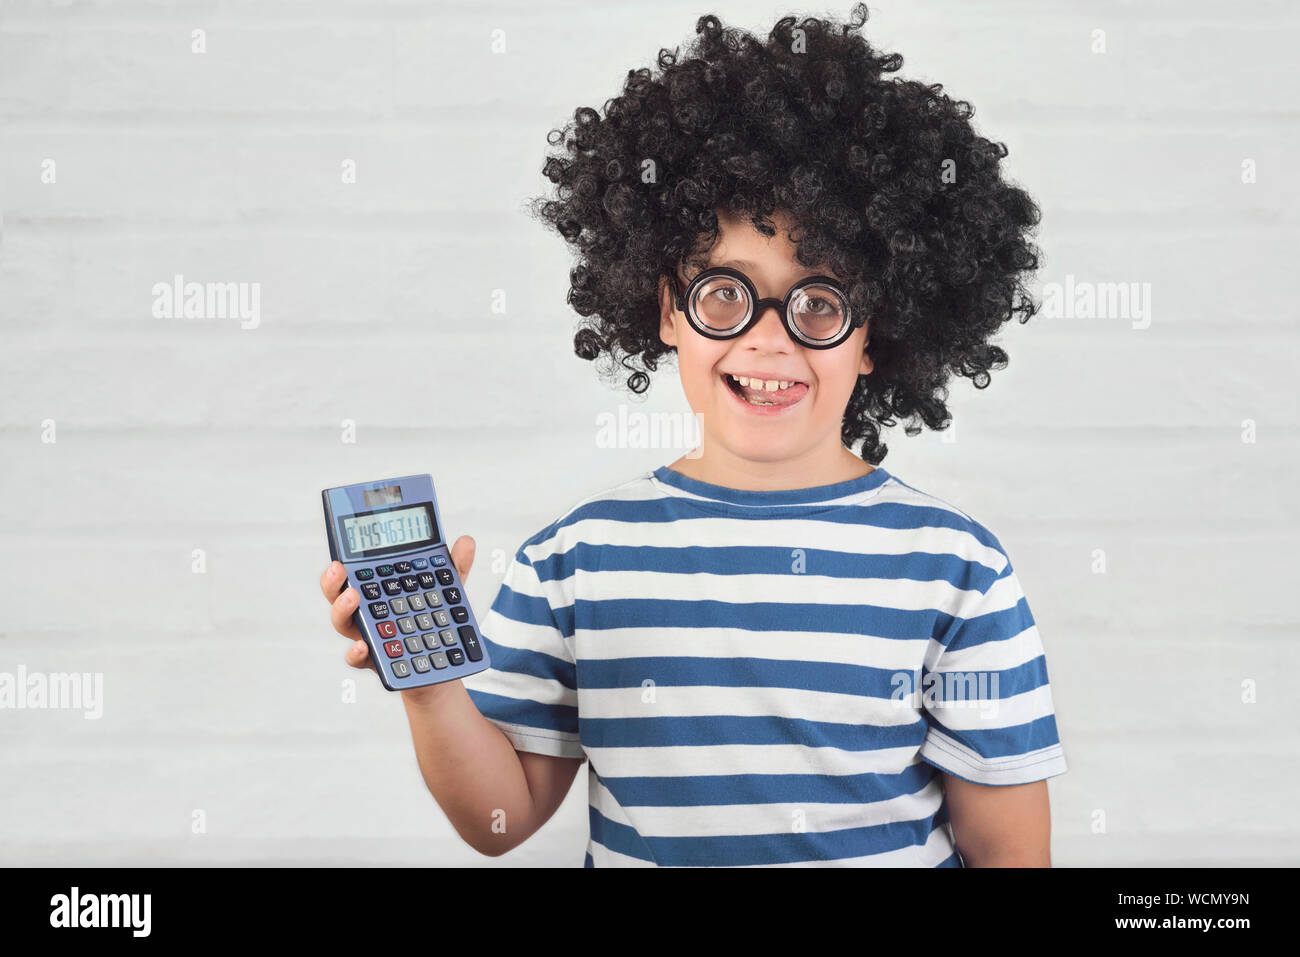 Funny bambino con la calcolatrice indossando occhiali nerd su Sfondo mattone Foto Stock